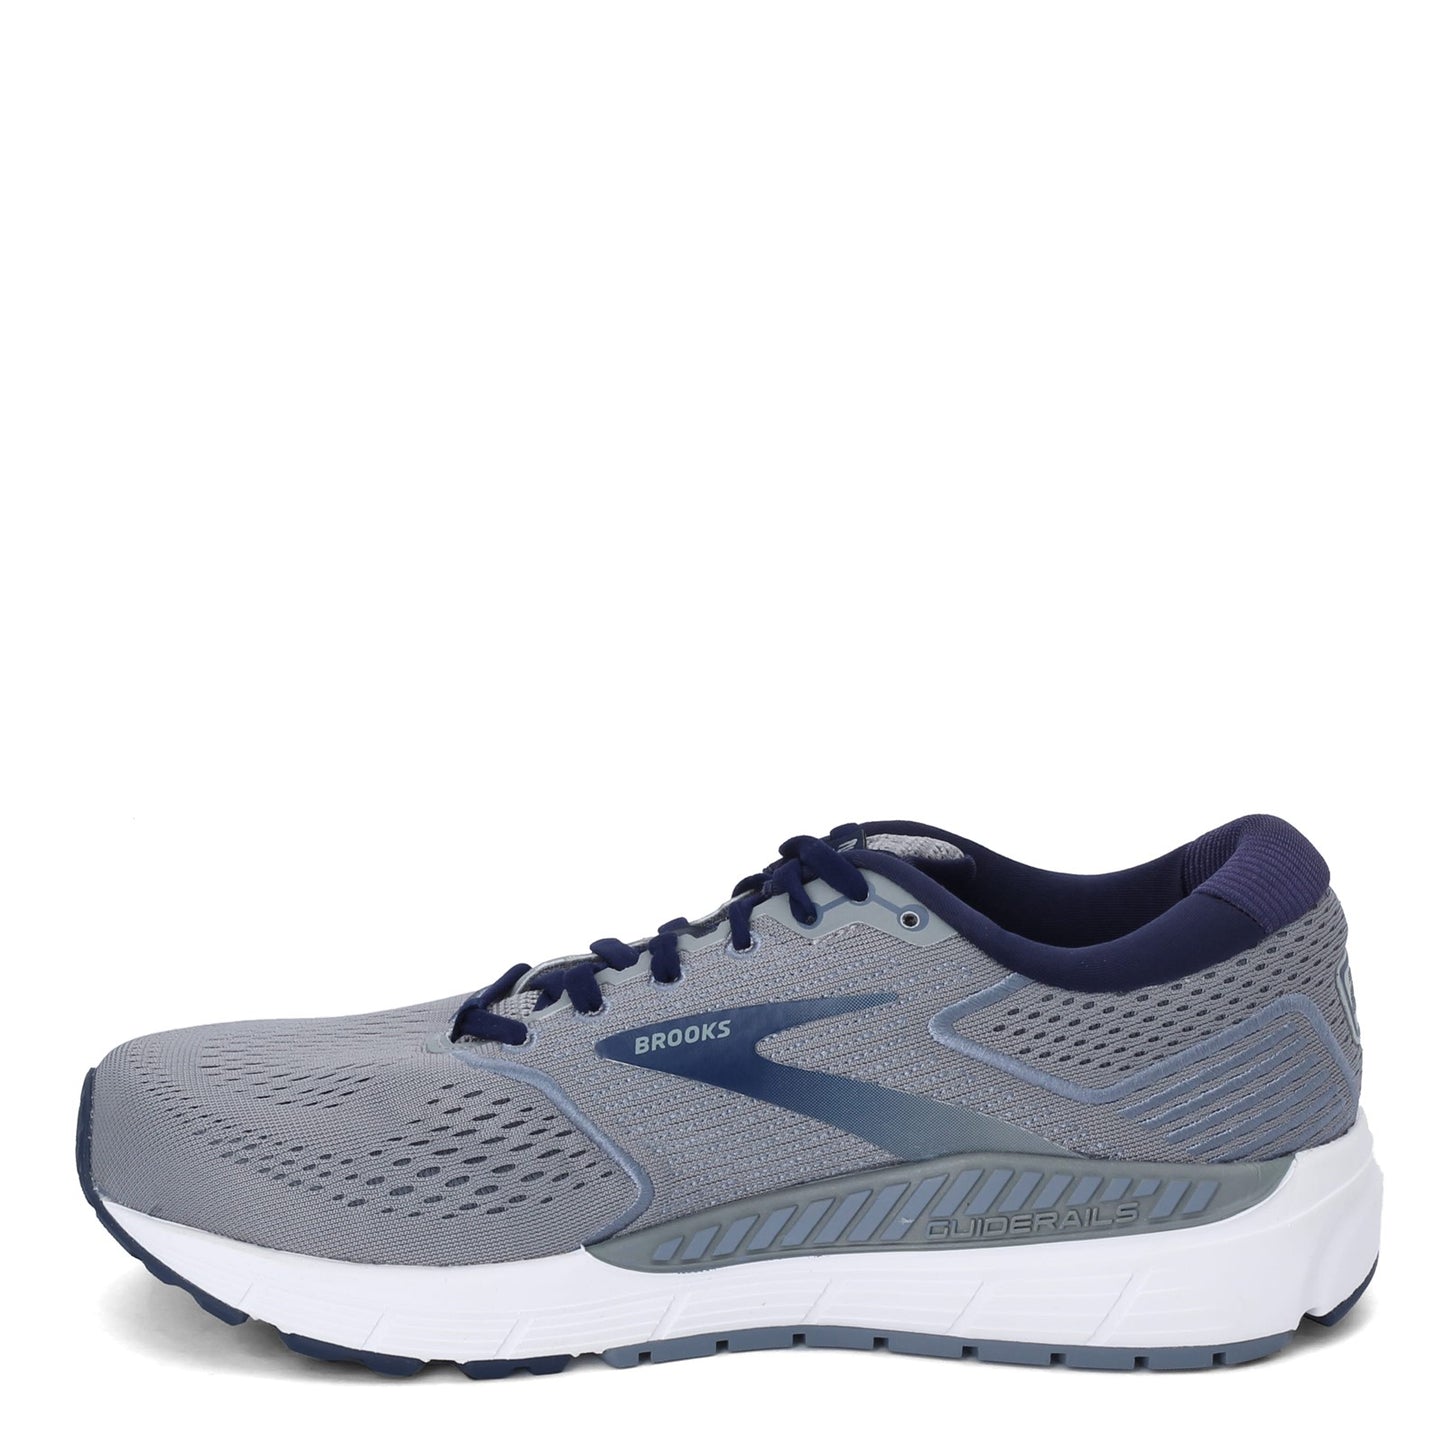 Peltz Shoes  Men's Brooks Beast 20 Running Shoe - Extra Wide Width Blue/Grey 110327 4E 491